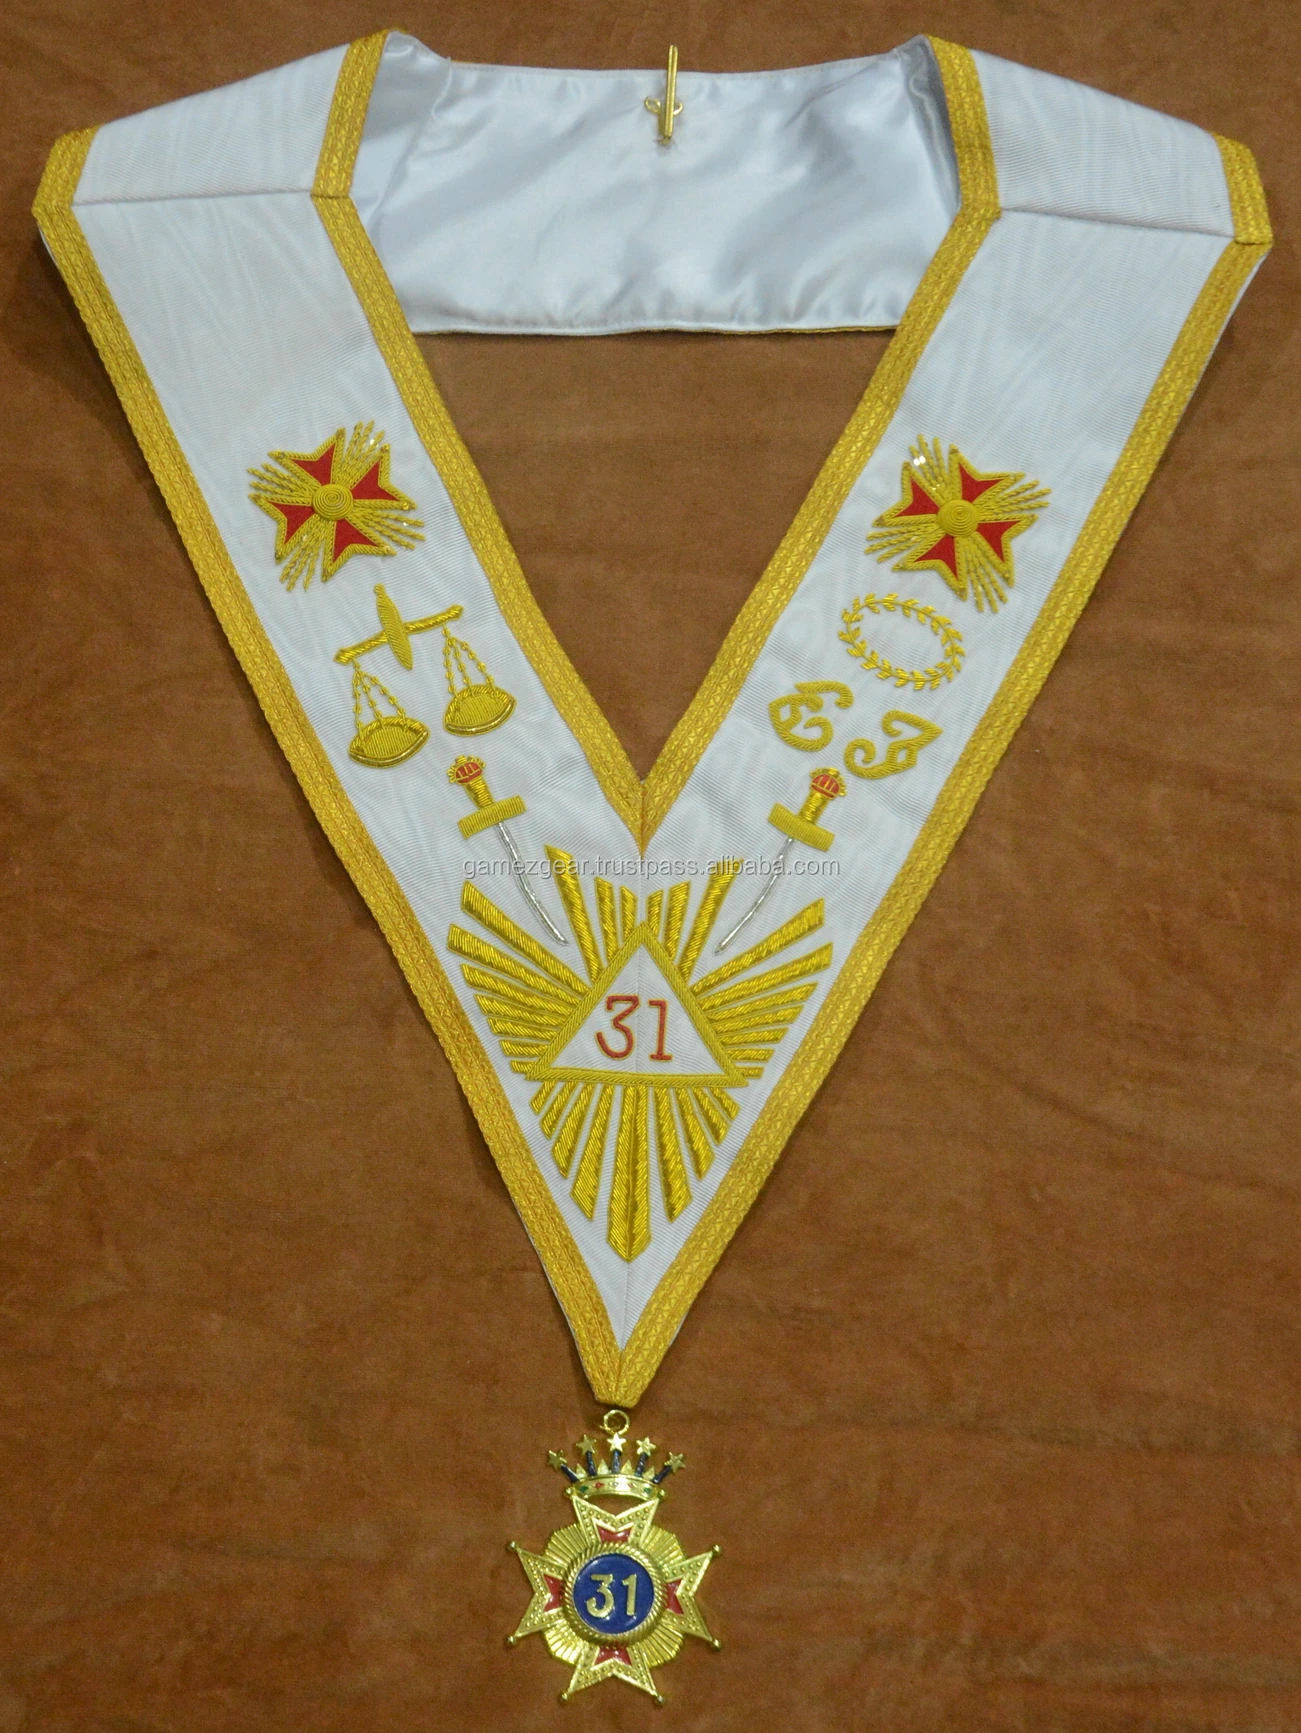 Masonic Regalia Rose Croix Regalia-32nd Degree collar